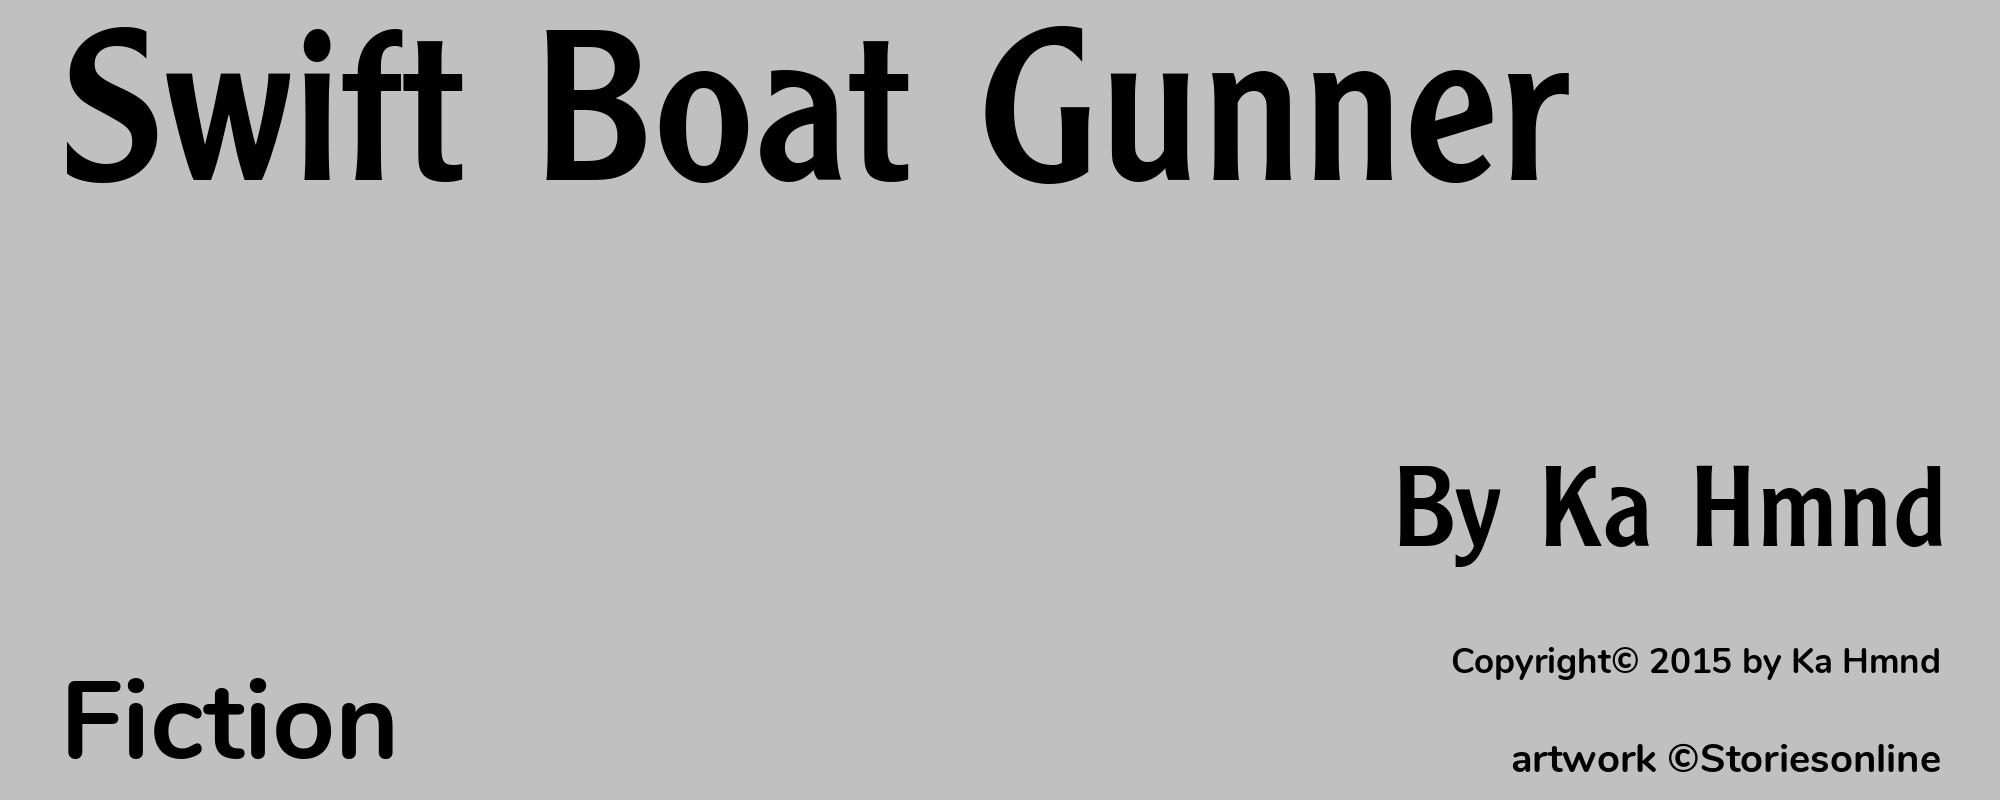 Swift Boat Gunner - Cover